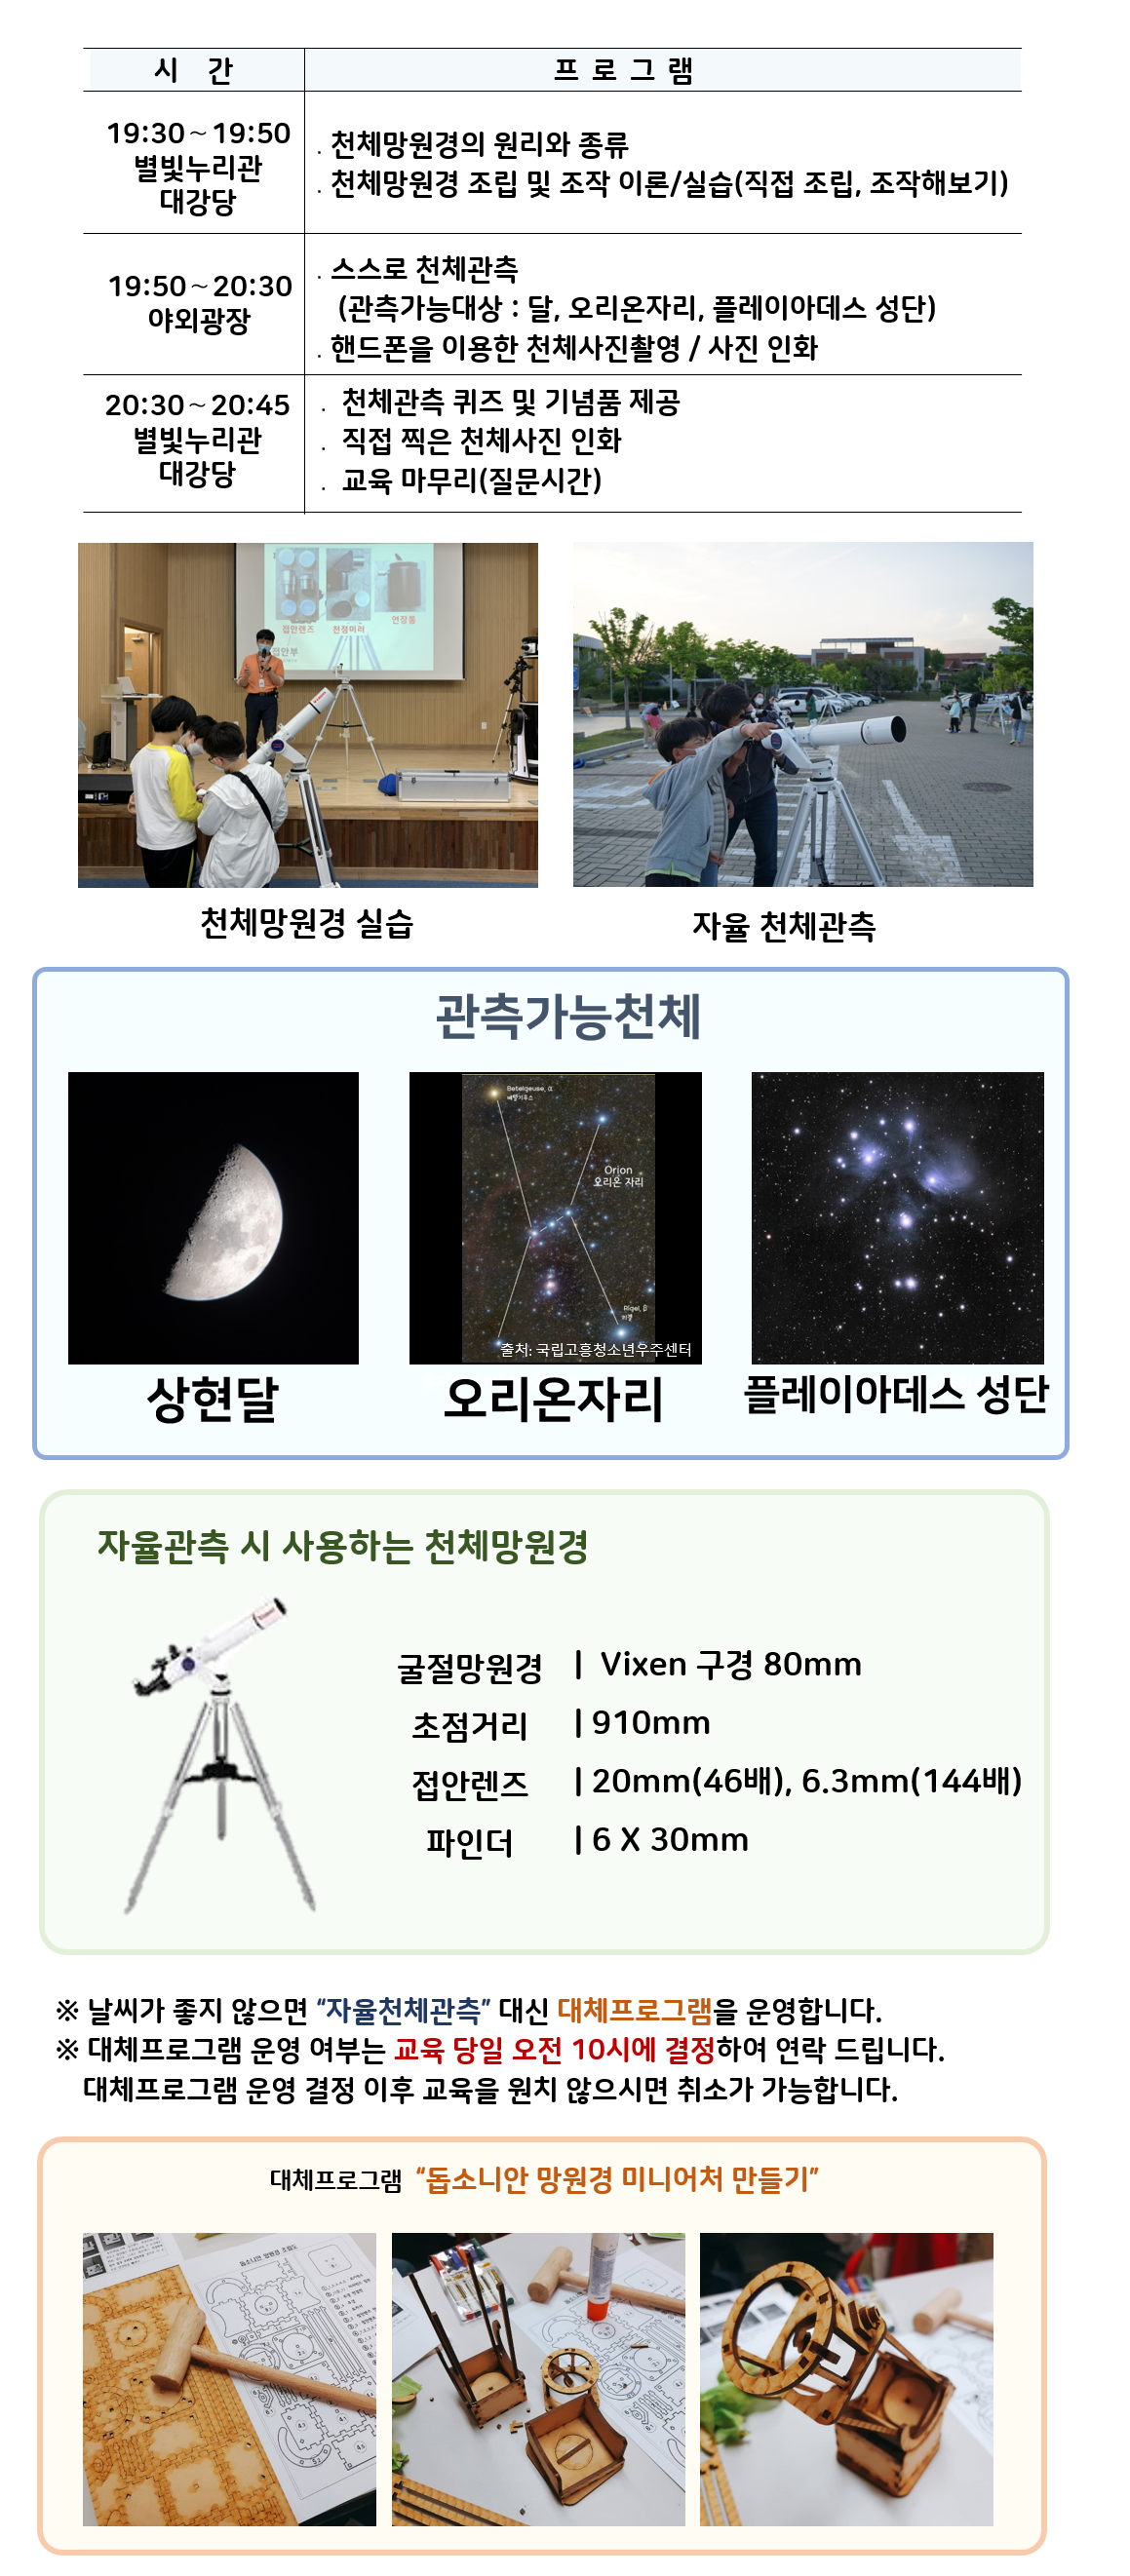 관측대장 시간 및 프로그램 | 19:30～19:50 별빛누리관 대강당 ․천체망원경의 원리와 종류, 천체망원경 조립 및 조작 이론/실습(직접 조립, 조작해보기) |19:50～20:30 야외광장 ․스스로 천체관측(관측가능대상 : 달,  오리온자리,  플레이아데스 성단) ․핸드폰을 이용한 천체사진촬영 / 사진 인화|  20:30~20:45, 별빛누리관 대강당 : 천체관측 퀴즈 및 기념품 제공, 직접 찍은 천체사진 인화, 교육마무리(질문시간)| 천체망원경 실습(천체망원경 실습하는 사진) |자율 천체관측(관람객이 자율적으로 천체관측하는 모습)|관찰가능한 천체 상현달(상현달 사진), 오리온자리(오리온자리 사진), 플레이아데스 성단(플레이아데스 성단 사진) |자율관측 시 사용하는 천체 망원경(천체망원경 사진),  굴절망원경 Vixen 구경 80mm 초점거리 910mm 접안렌즈 20mm(46배), 6.3mm(144배) 파인더 6 X 30mm| ※ 날씨가 좋지 않으면 “자율천체관측” 대신 대체프로그램을 운영합니다.  ※ 대체프로그램 운영 여부는 교육 당일 오전 10시에 결정하여 연락 드립니다. 대체프로그램 운영 결정 이후 교육을 원치 않으시면 취소가 가능합니다.| 대체프로그램 '돕소니안 망원경 미니어처 만들기(돕소니안 망원경 미니어처 만들기 재료사진, 돕소니안 망원경 미니어처 만들기 제작과정 사진, 돕소니안 망원경 미니어처 만들기 완성품 사진)' 